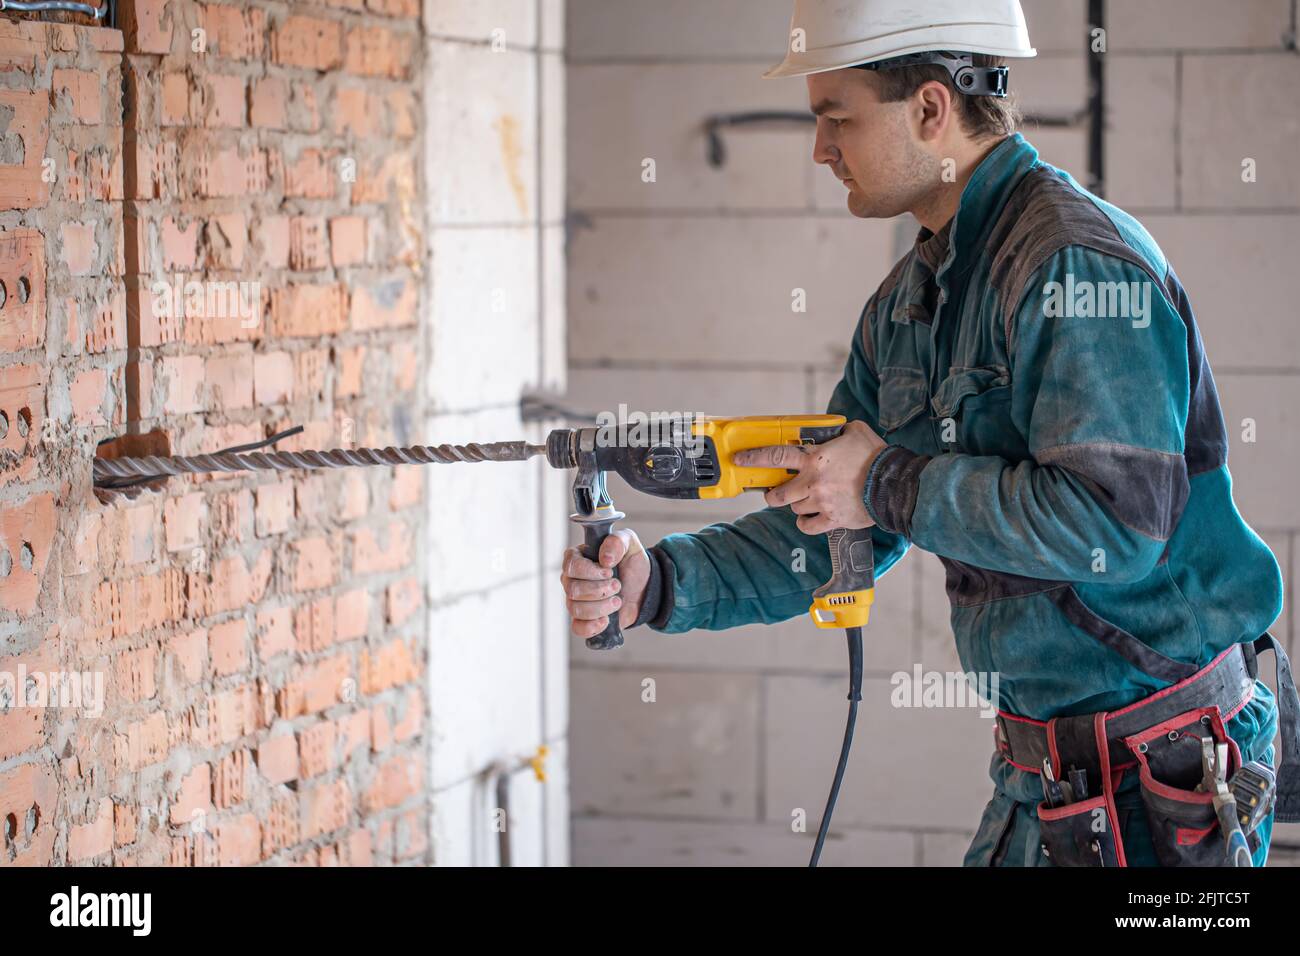 Hombre de mano en el proceso de perforar una pared con una perforadora  Fotografía de stock - Alamy